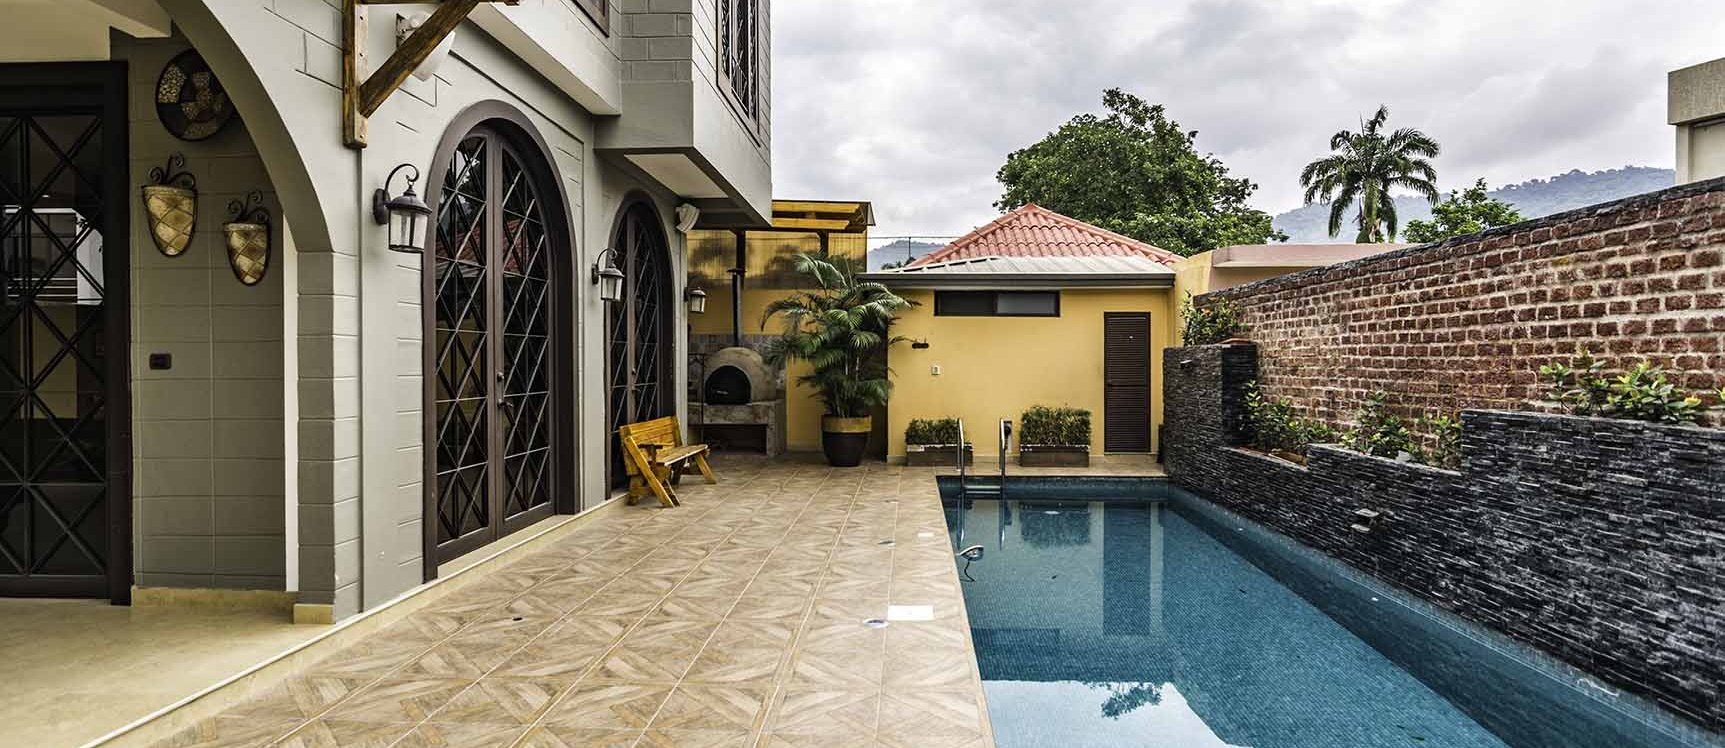 GeoBienes - Casa en venta en Portofino , Vía a la Costa, Guayaquil  - Plusvalia Guayaquil Casas de venta y alquiler Inmobiliaria Ecuador